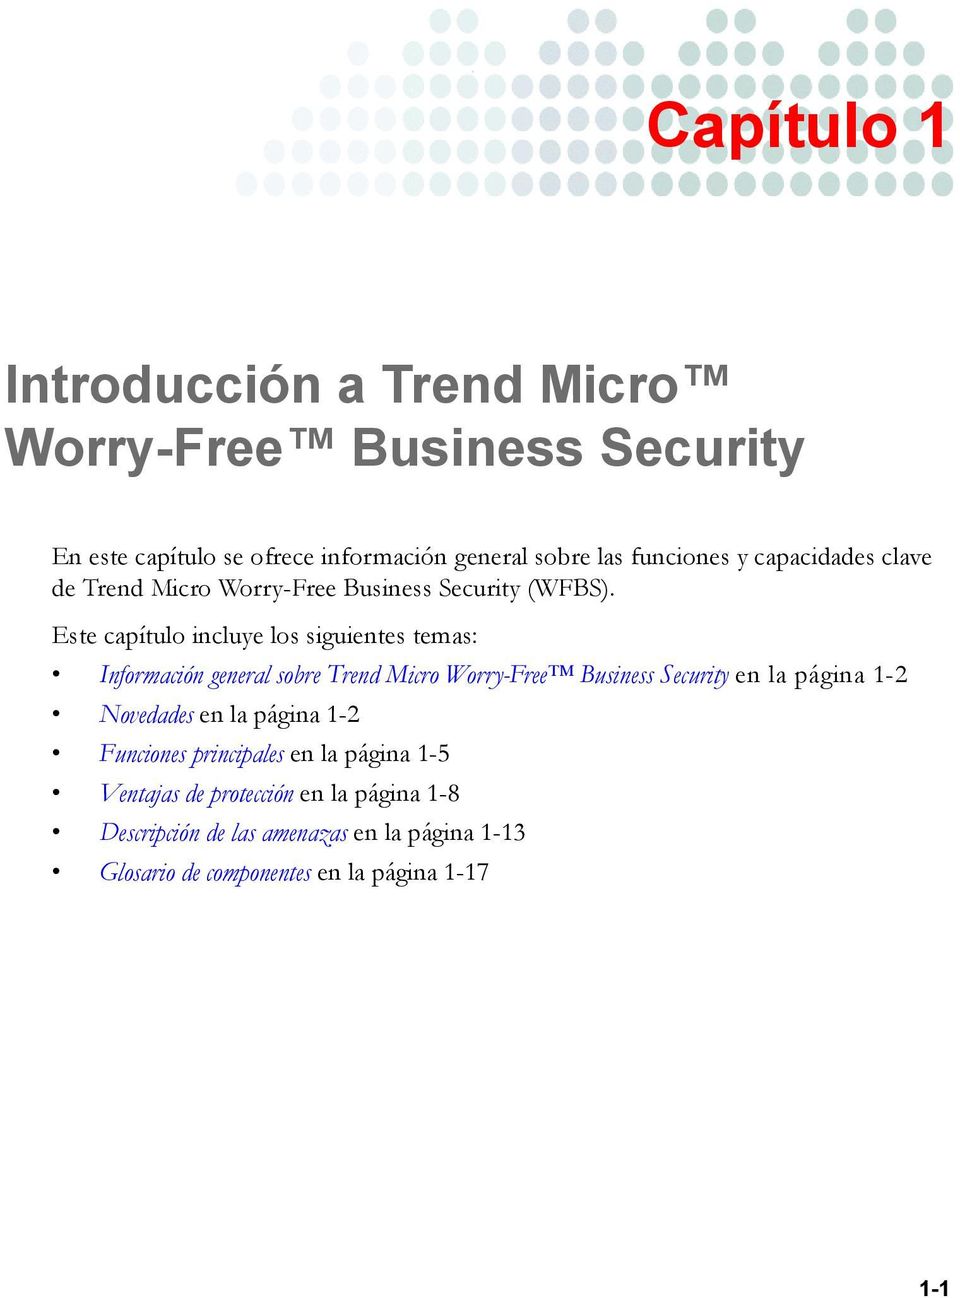 Este capítulo incluye los siguientes temas: Información general sobre Trend Micro Worry-Free Business Security en la página 1-2